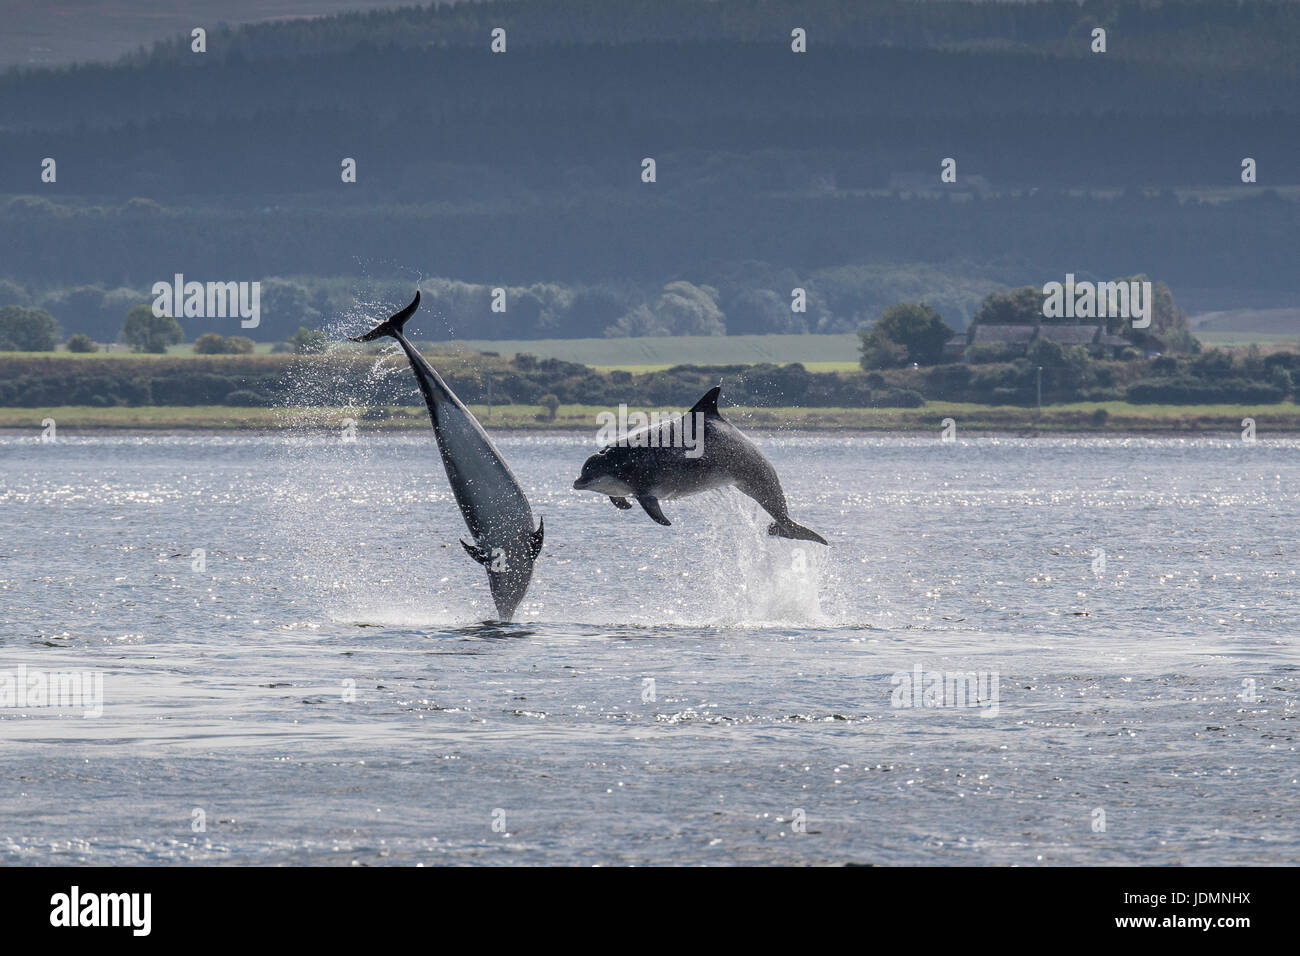 Deux Grand dauphin, Tursiops truncatus, contrevenir à l'unisson à Chanonry Point, Black Isle, Moray, Ecosse, Royaume-Uni Banque D'Images